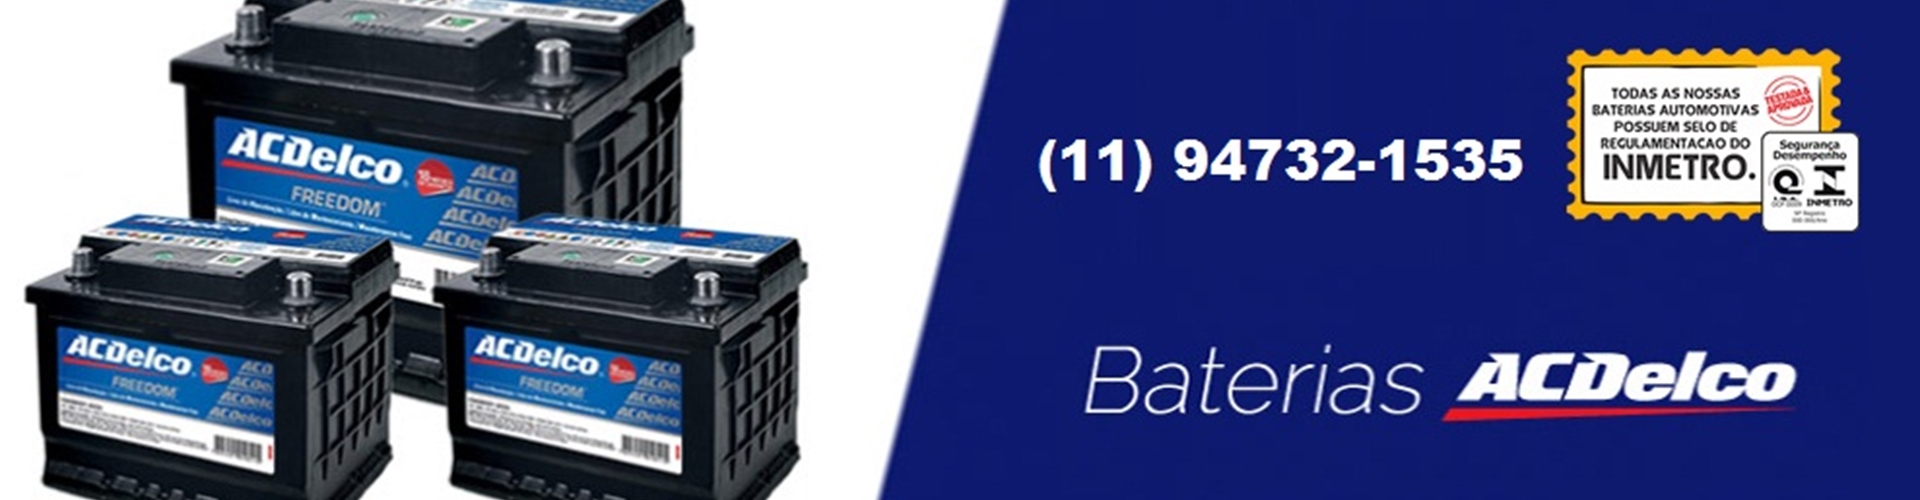 Baterias de Moto Barueri (11) 4167-7884